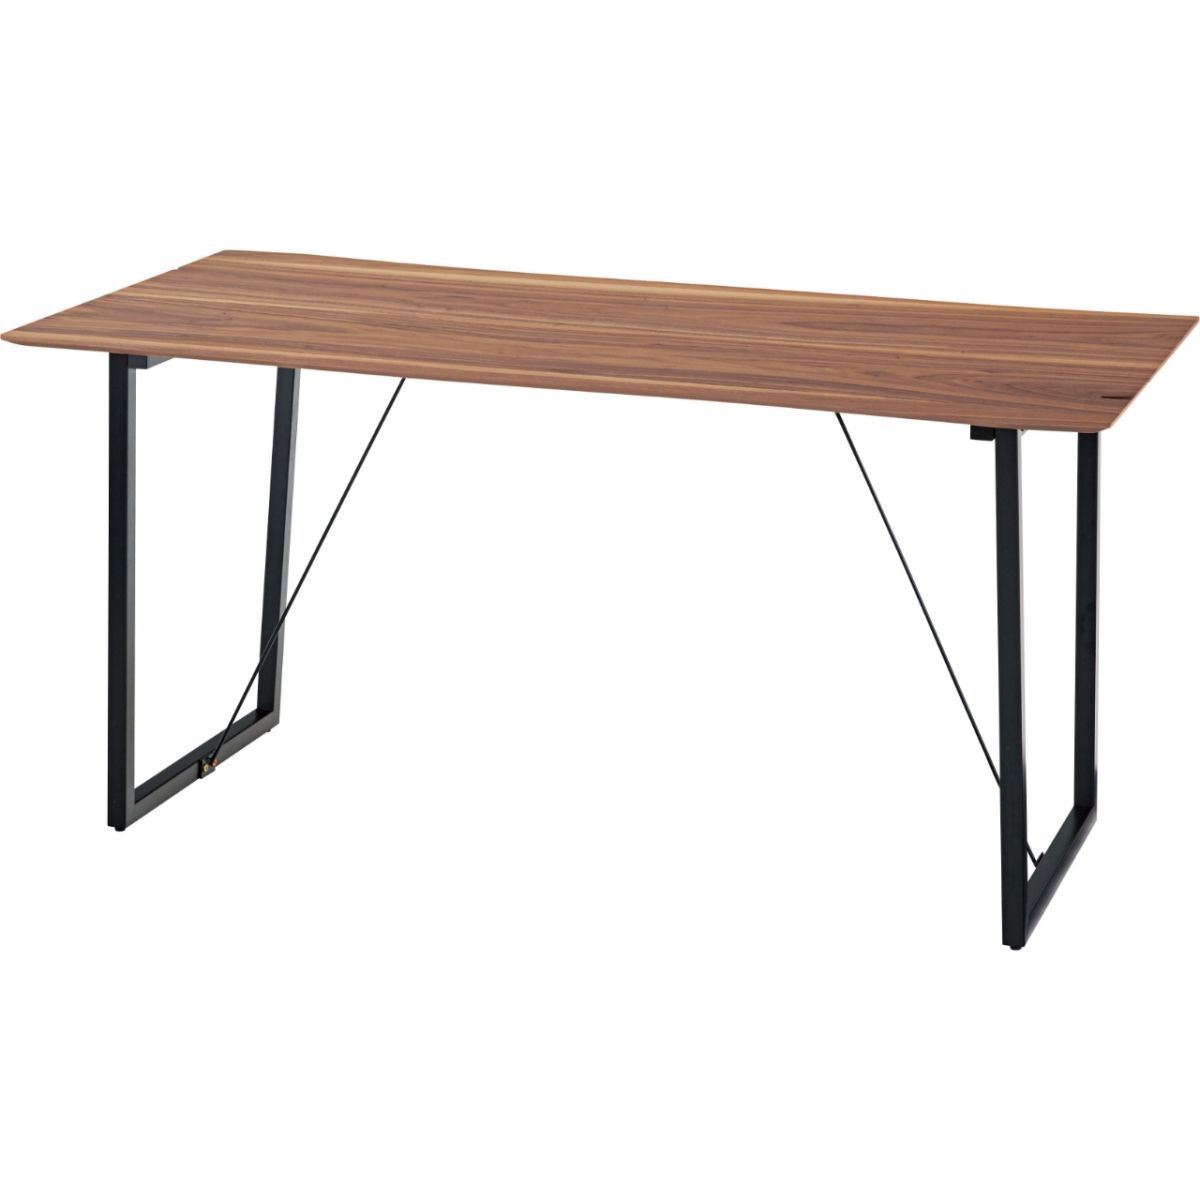 ダイニングテーブル W150×D80×H73 天然木 ウォルナット テーブル カフェ 北欧 インテリア 新生活 一人暮らし 国内発送 JPB-95WAL